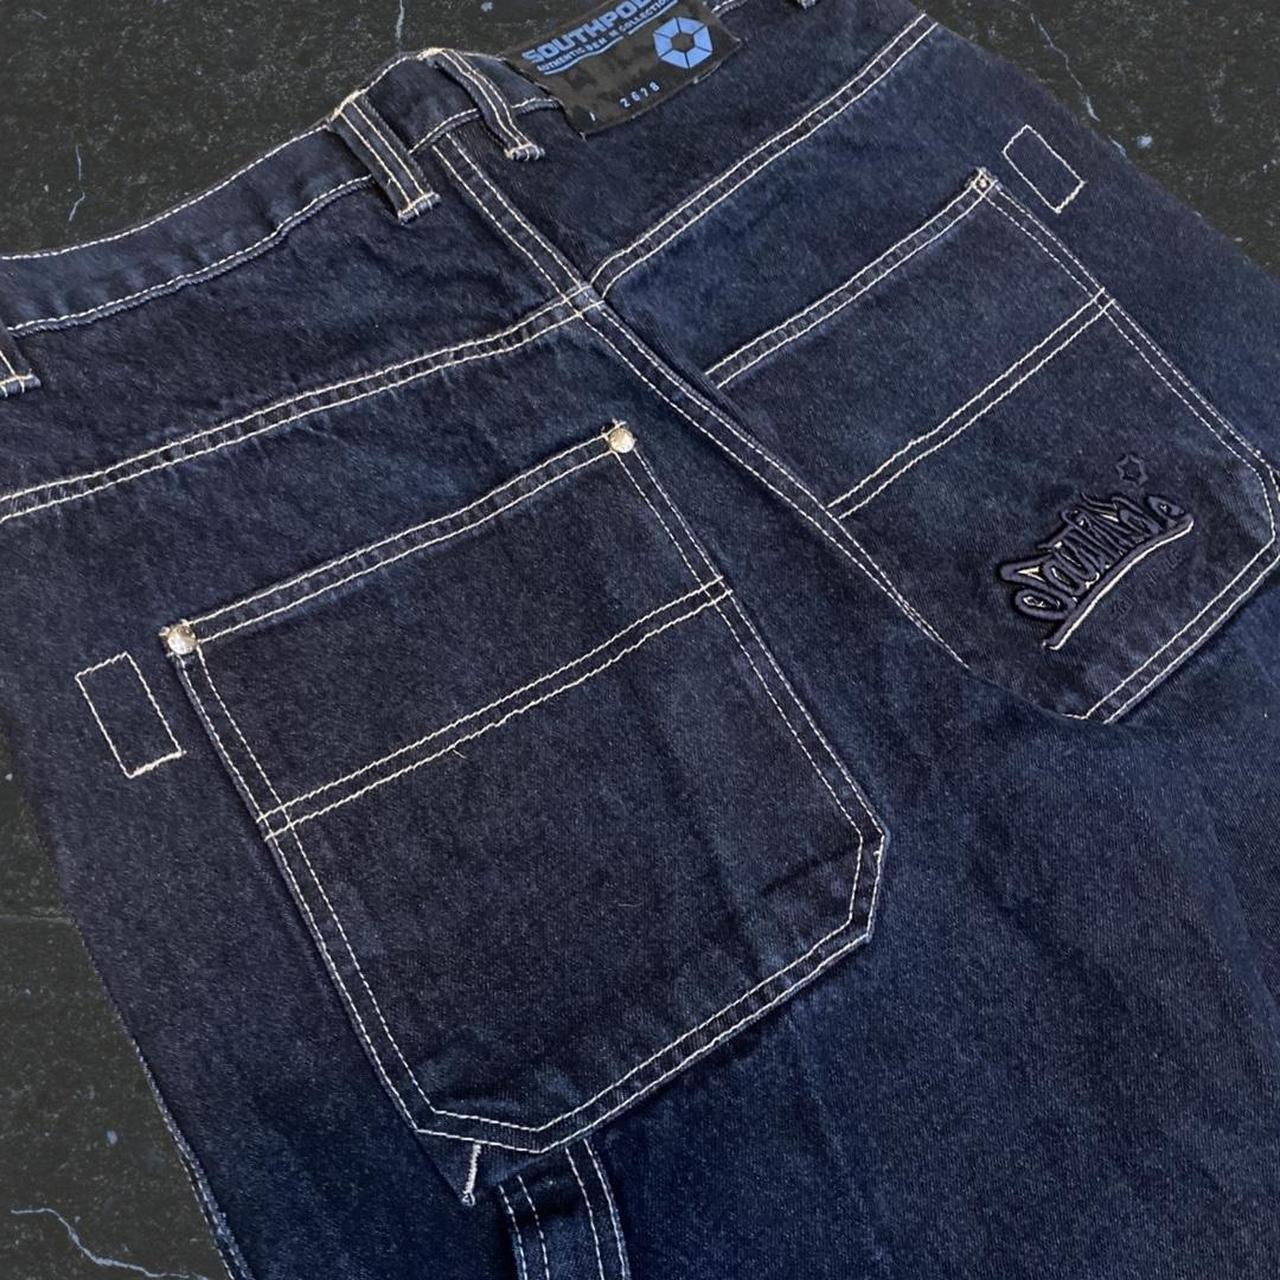 Southpole baggy carpenter jeans, size 34x30.... - Depop